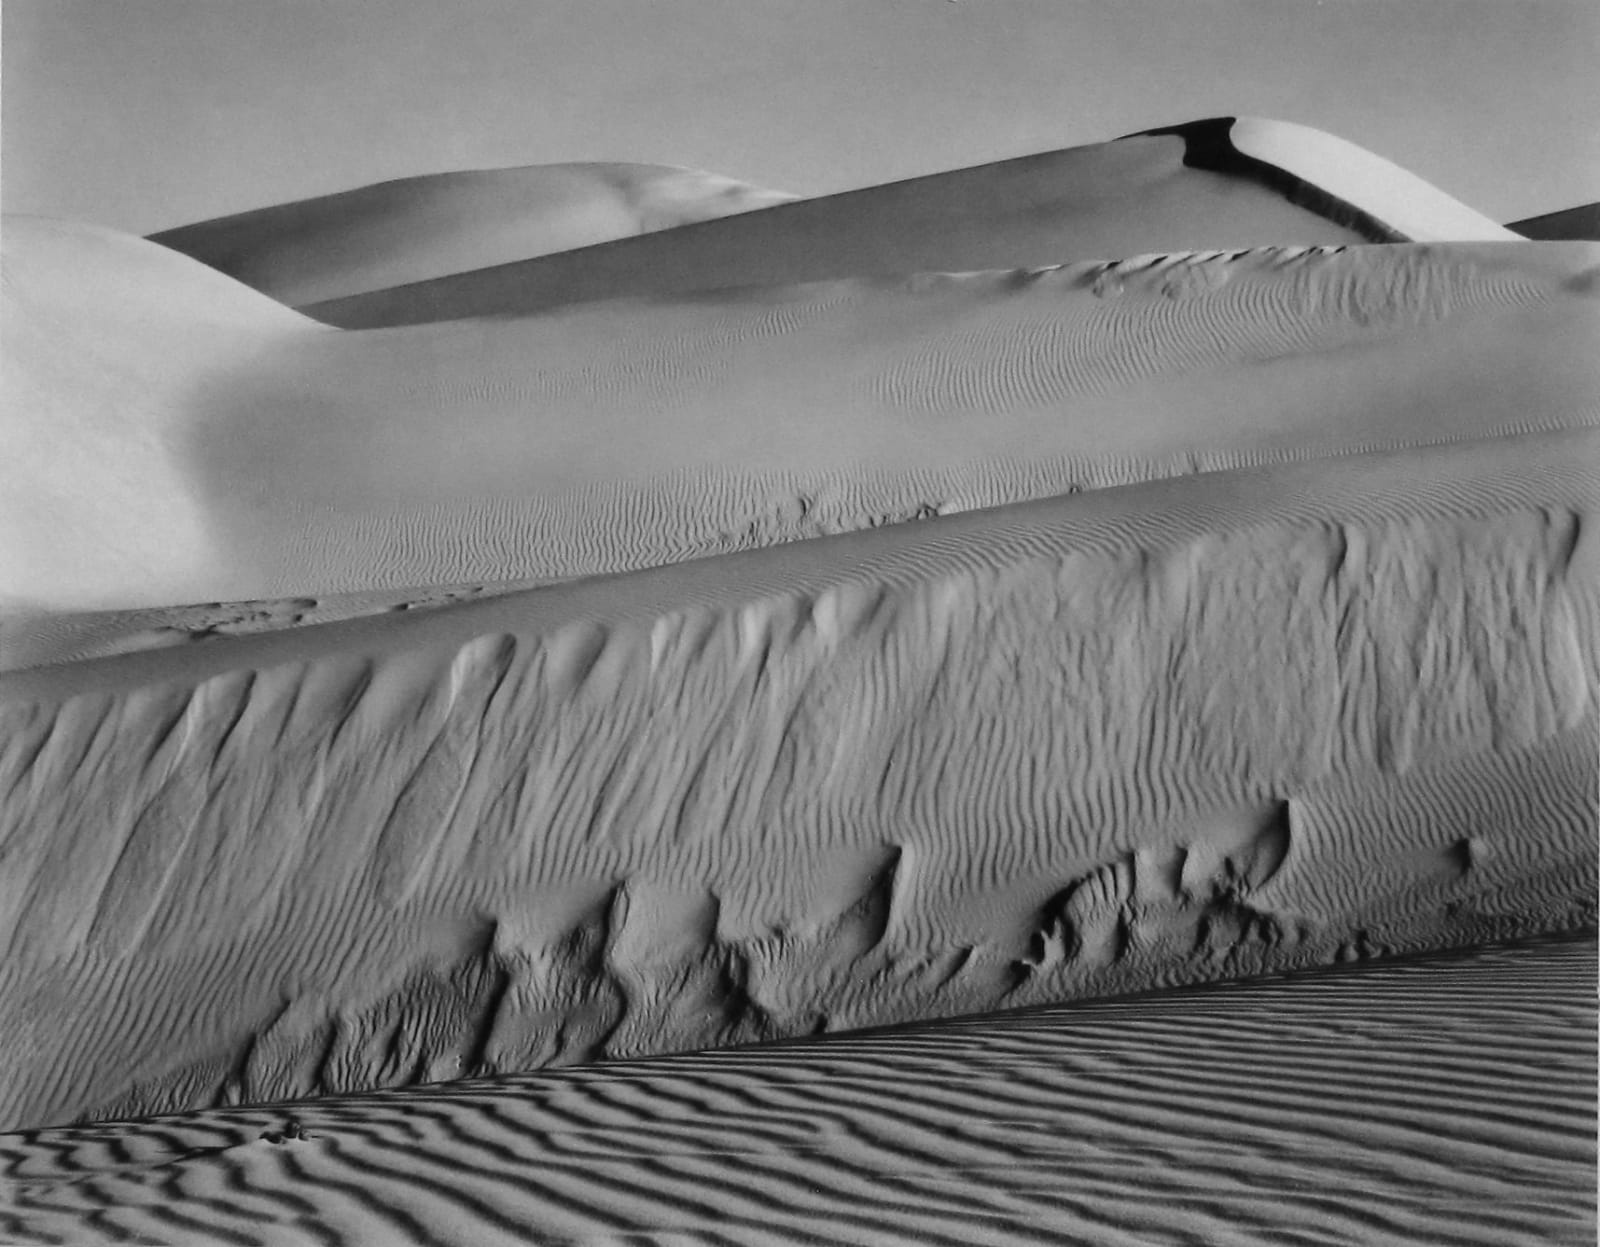 Edward Weston, Oceano, 1936